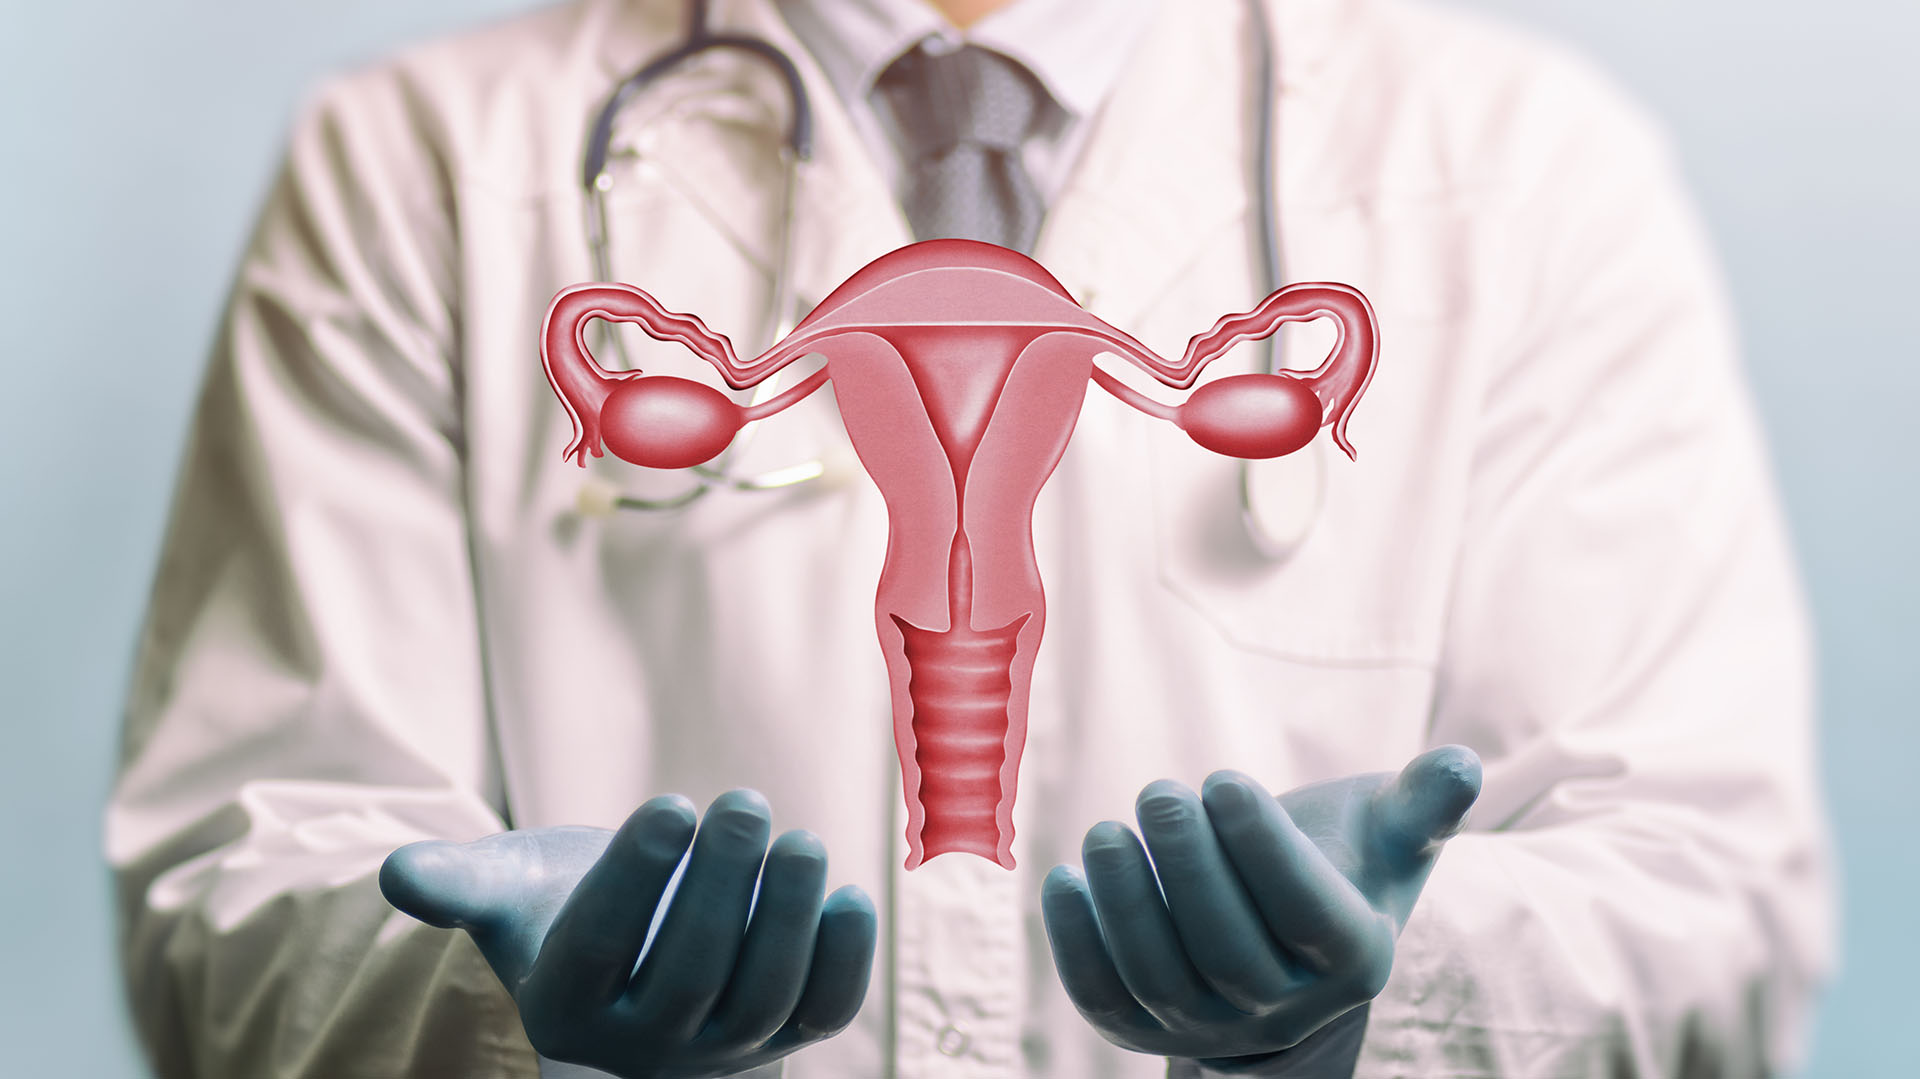 La endometriosis podría ser causada por una bacteria, según un estudio